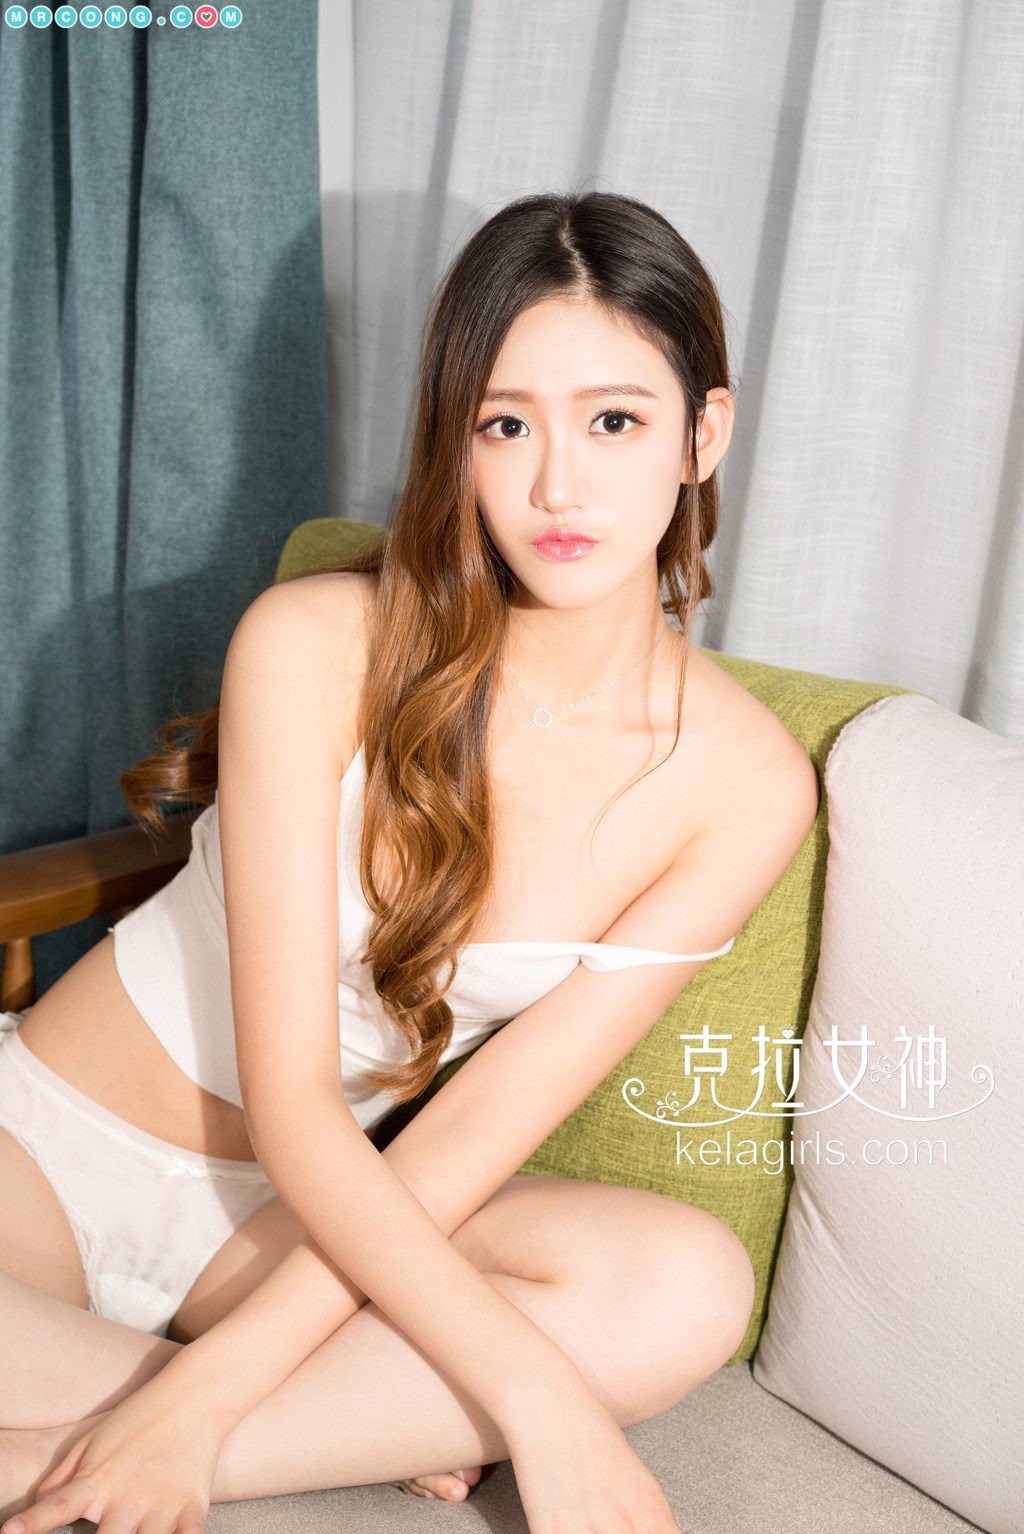 KelaGirls 2017-11-25: Model Jing Yi (景 亦) (26 pictures) photo 1-11